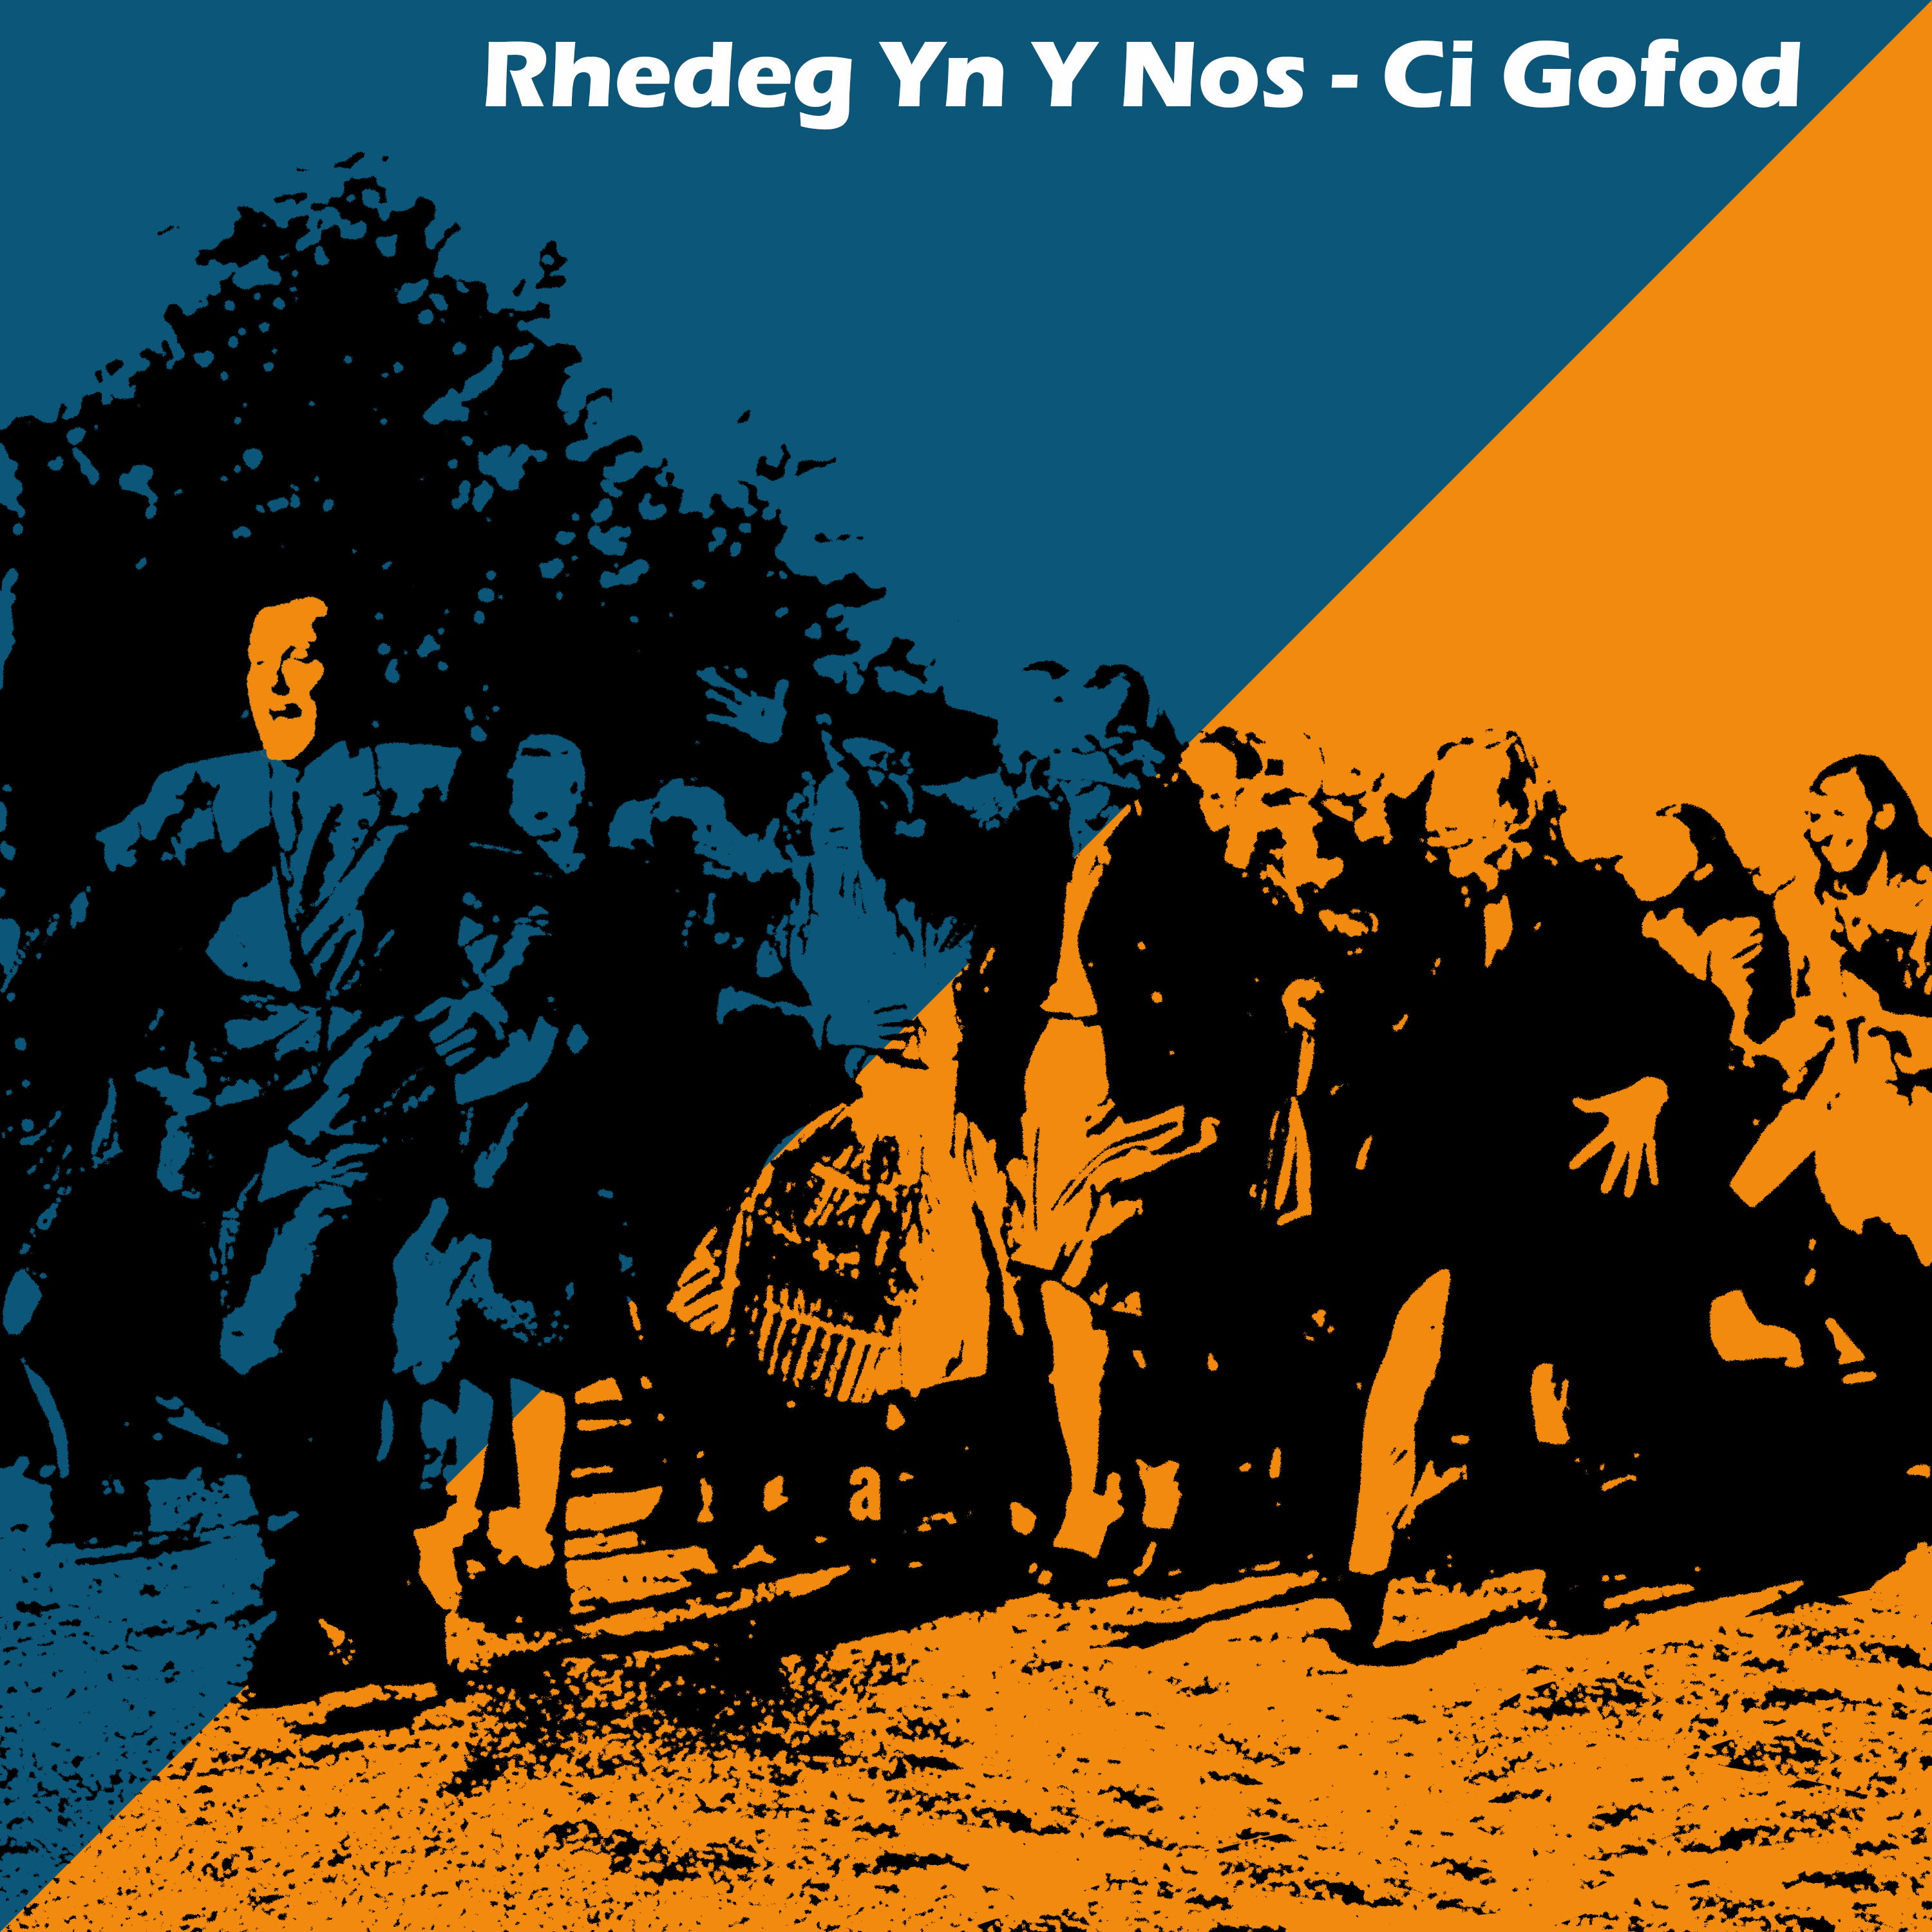 LISTEN | “Rhedeg Yn Y Nos” by Ci Gofod